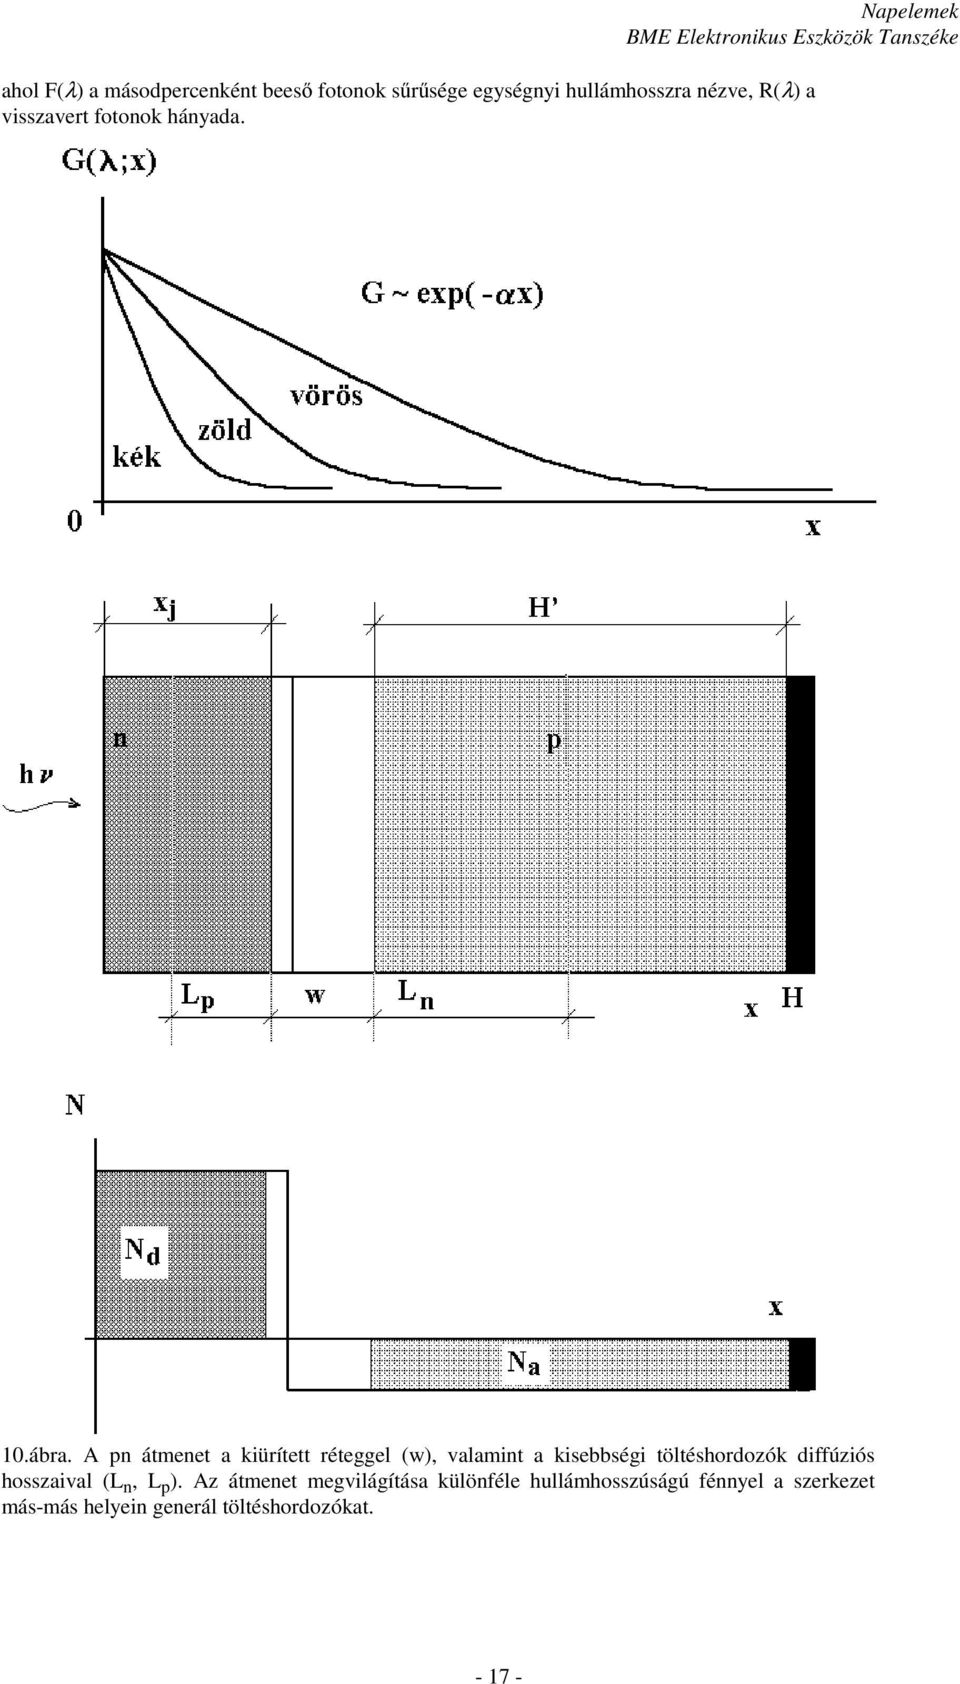 A n átmenet a kiürített réteggel (w), valamint a kisebbségi töltéshordozók diffúziós